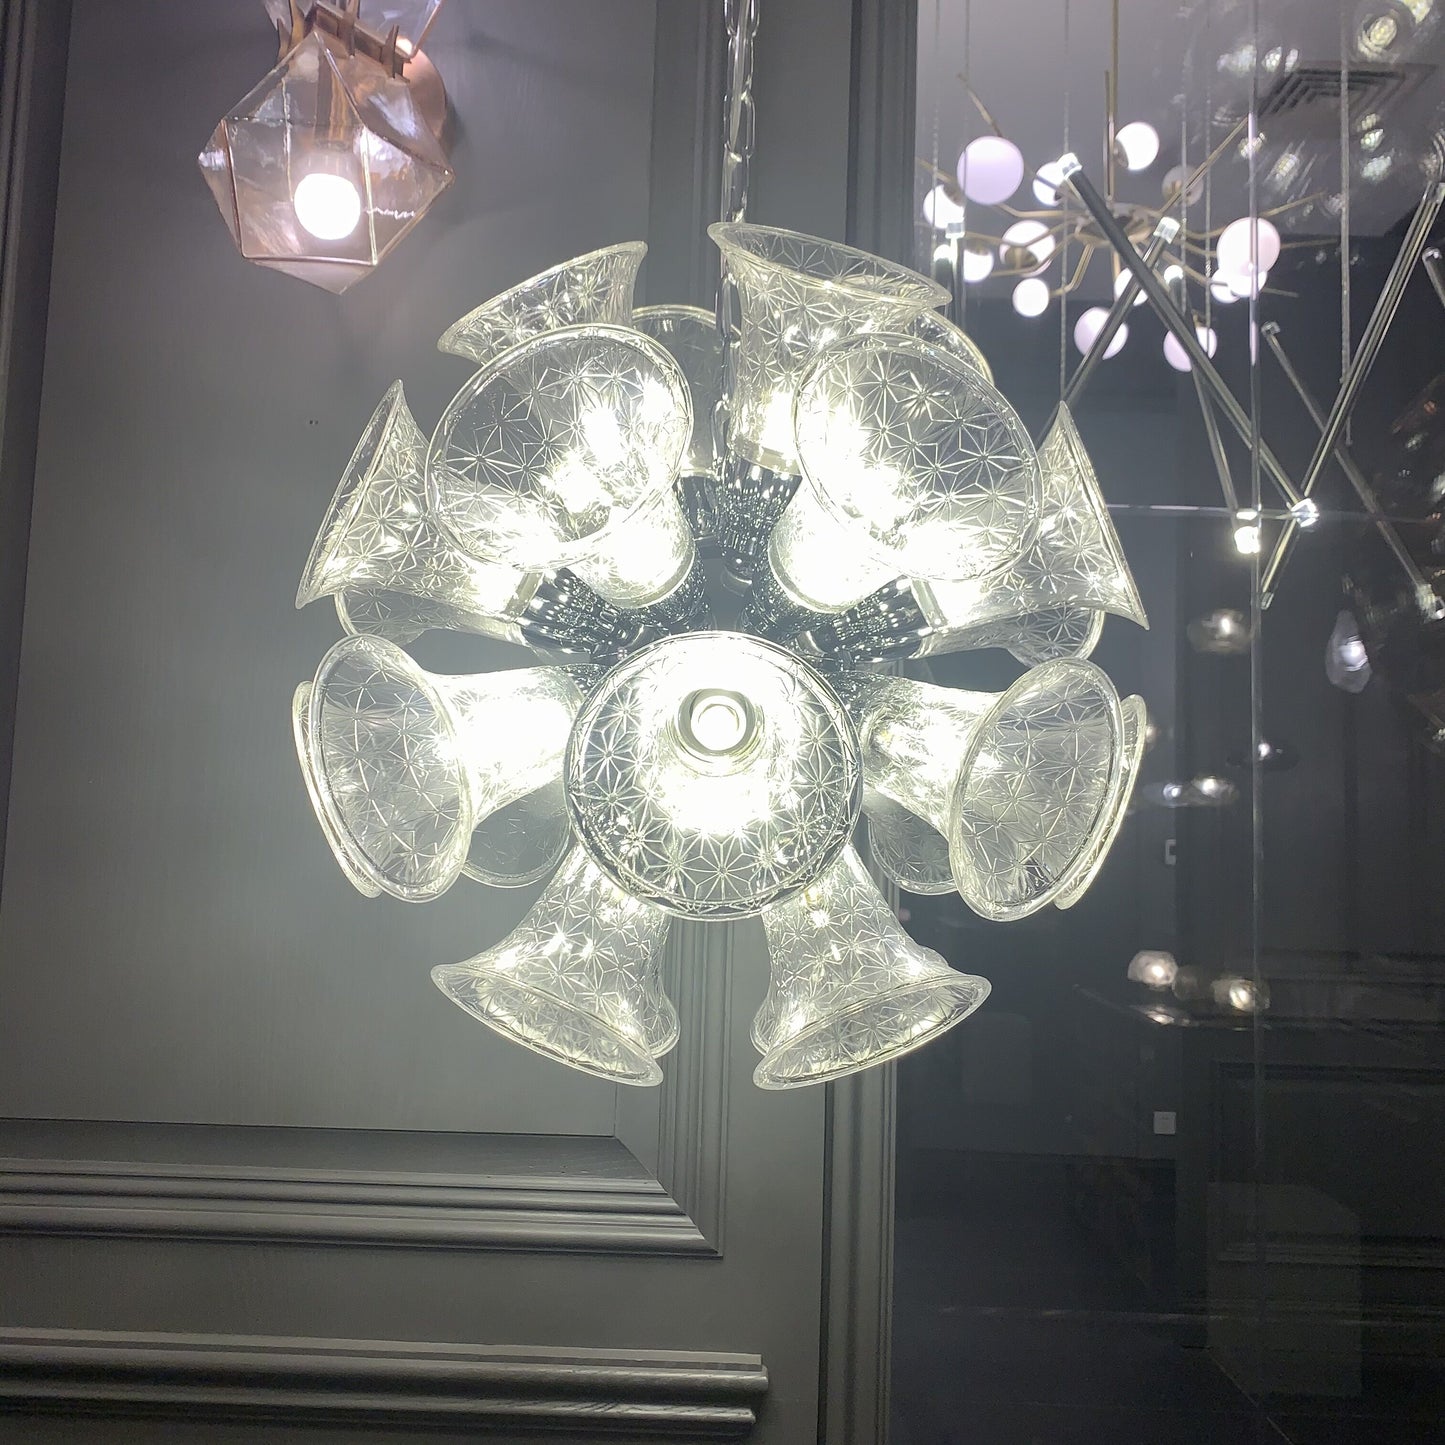 Oversized Avant Art Globe Horn Chandelier Designer Chalice Suspension Pendant Light for Living/Dining Room